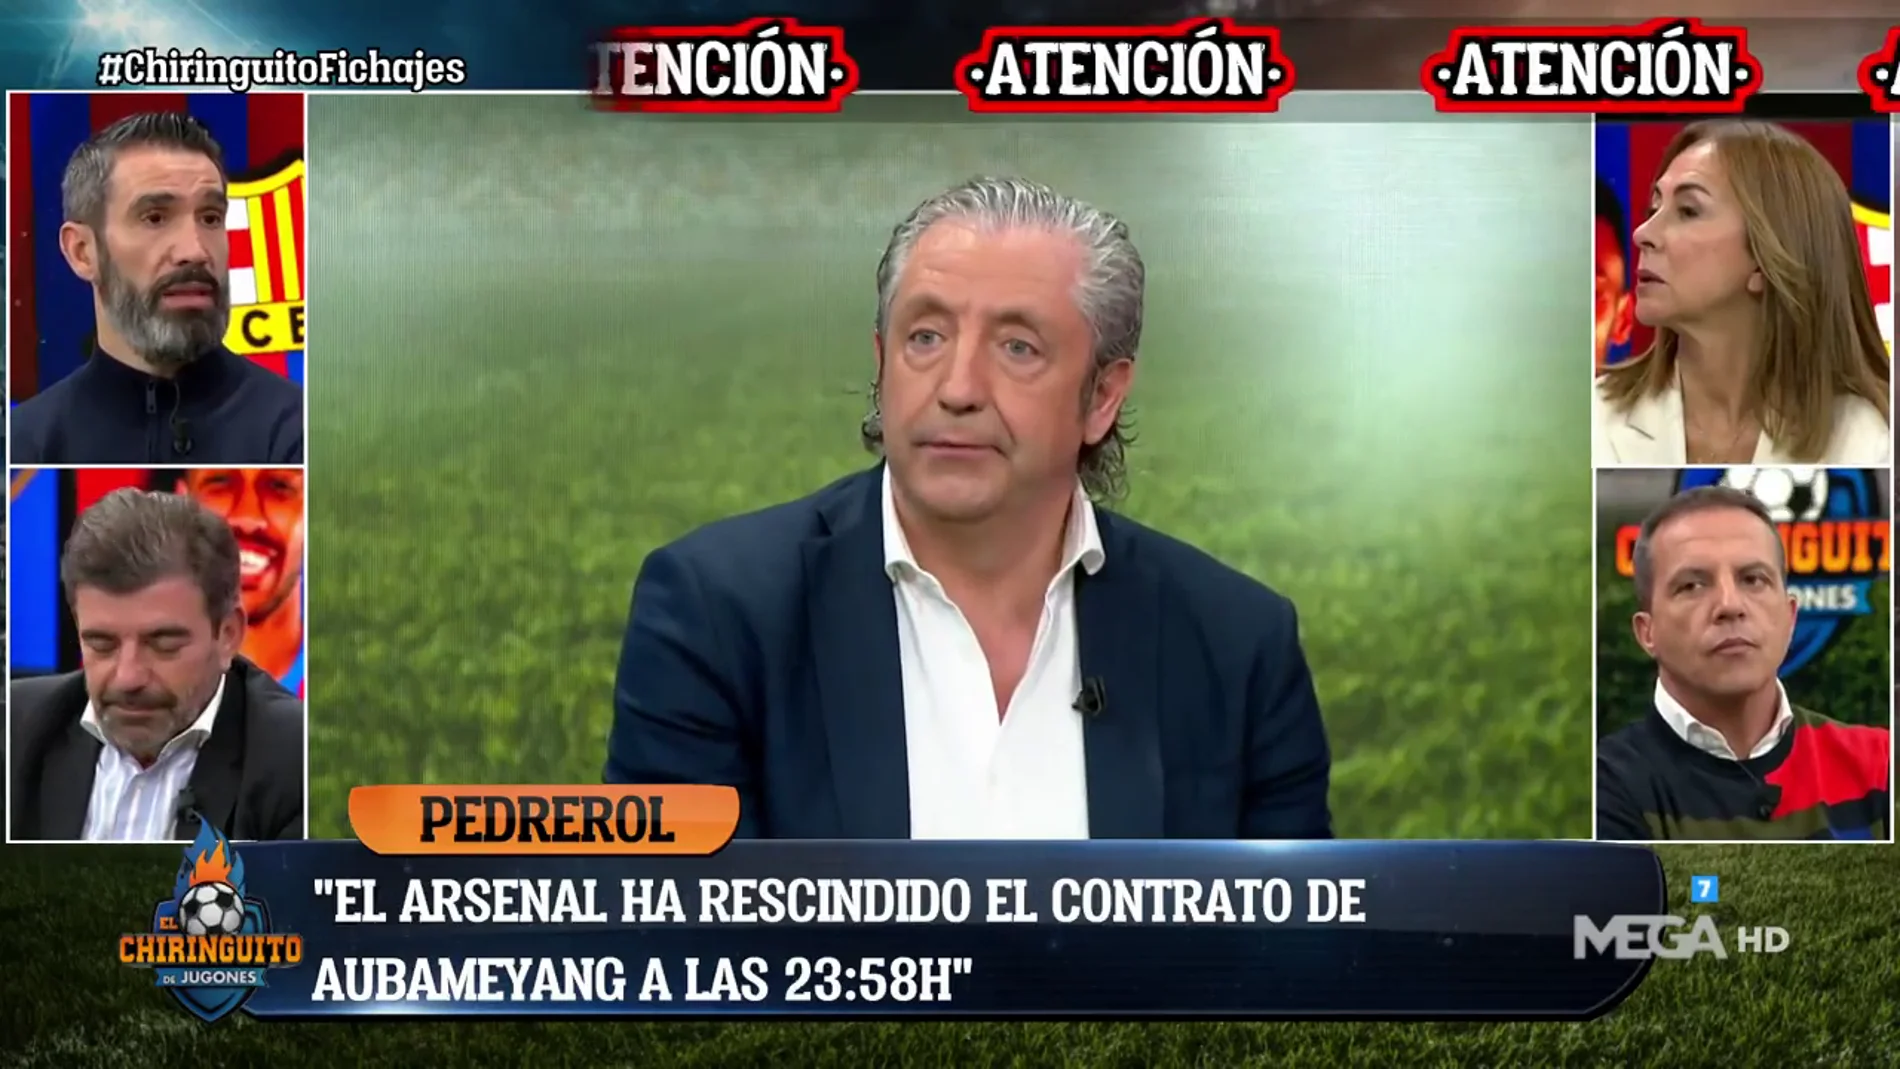 Josep Pedrerol: "El Arsenal ha rescindido el contrato de Aubameyang a las 23:58h"